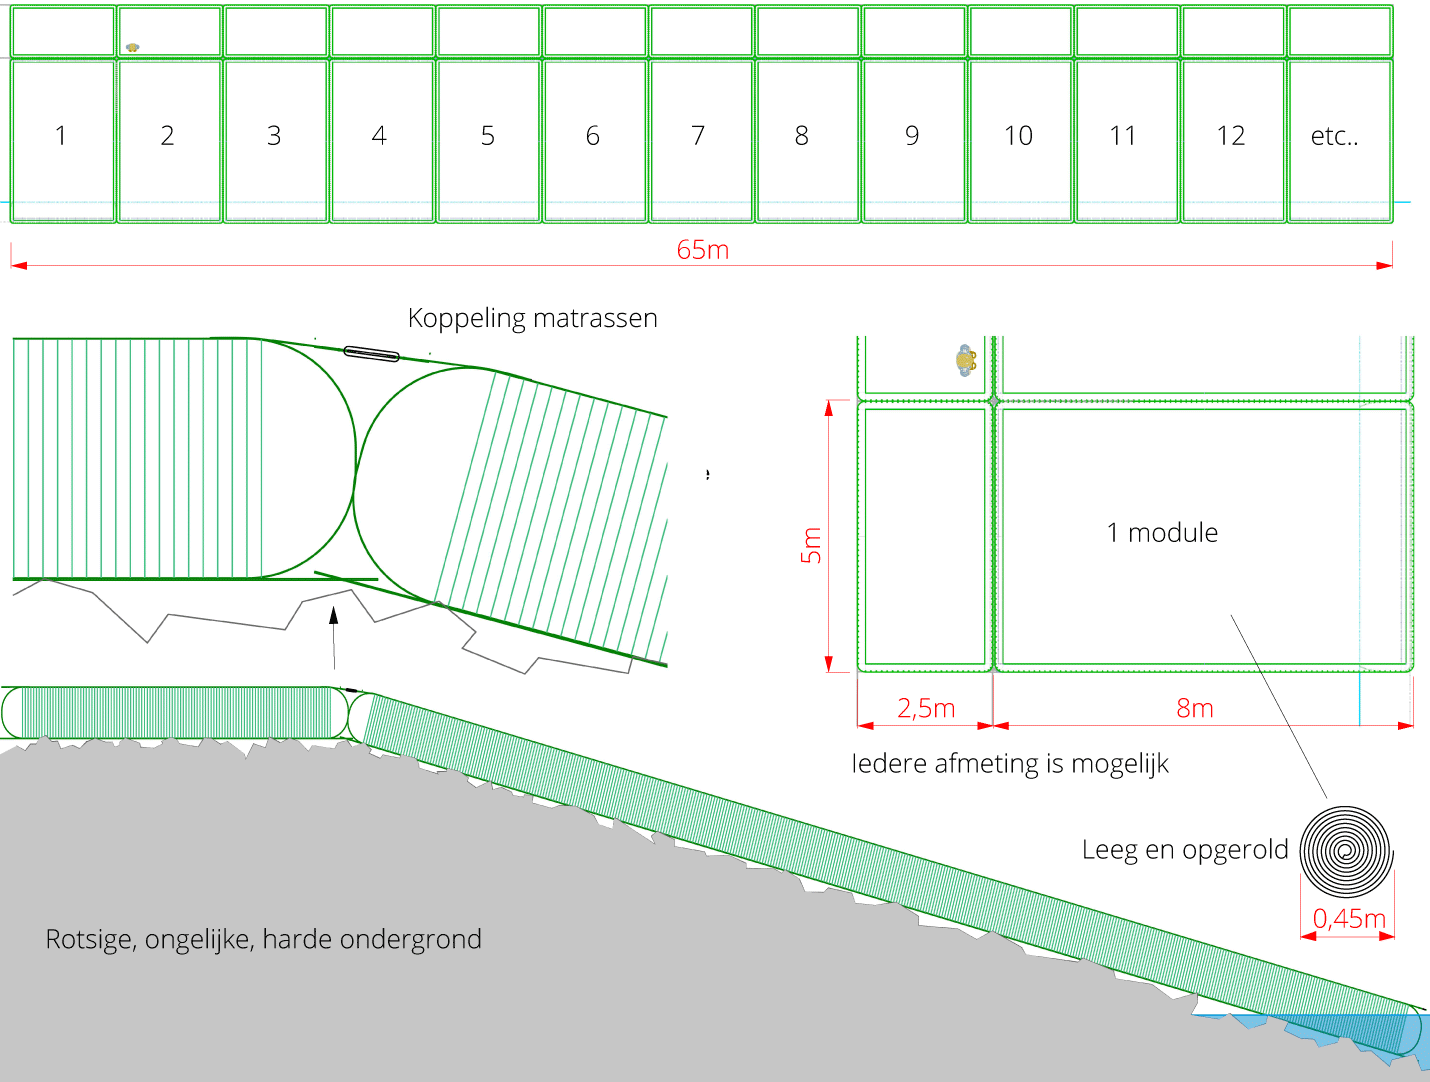 Engineering opblaasbare modulaire matrassen